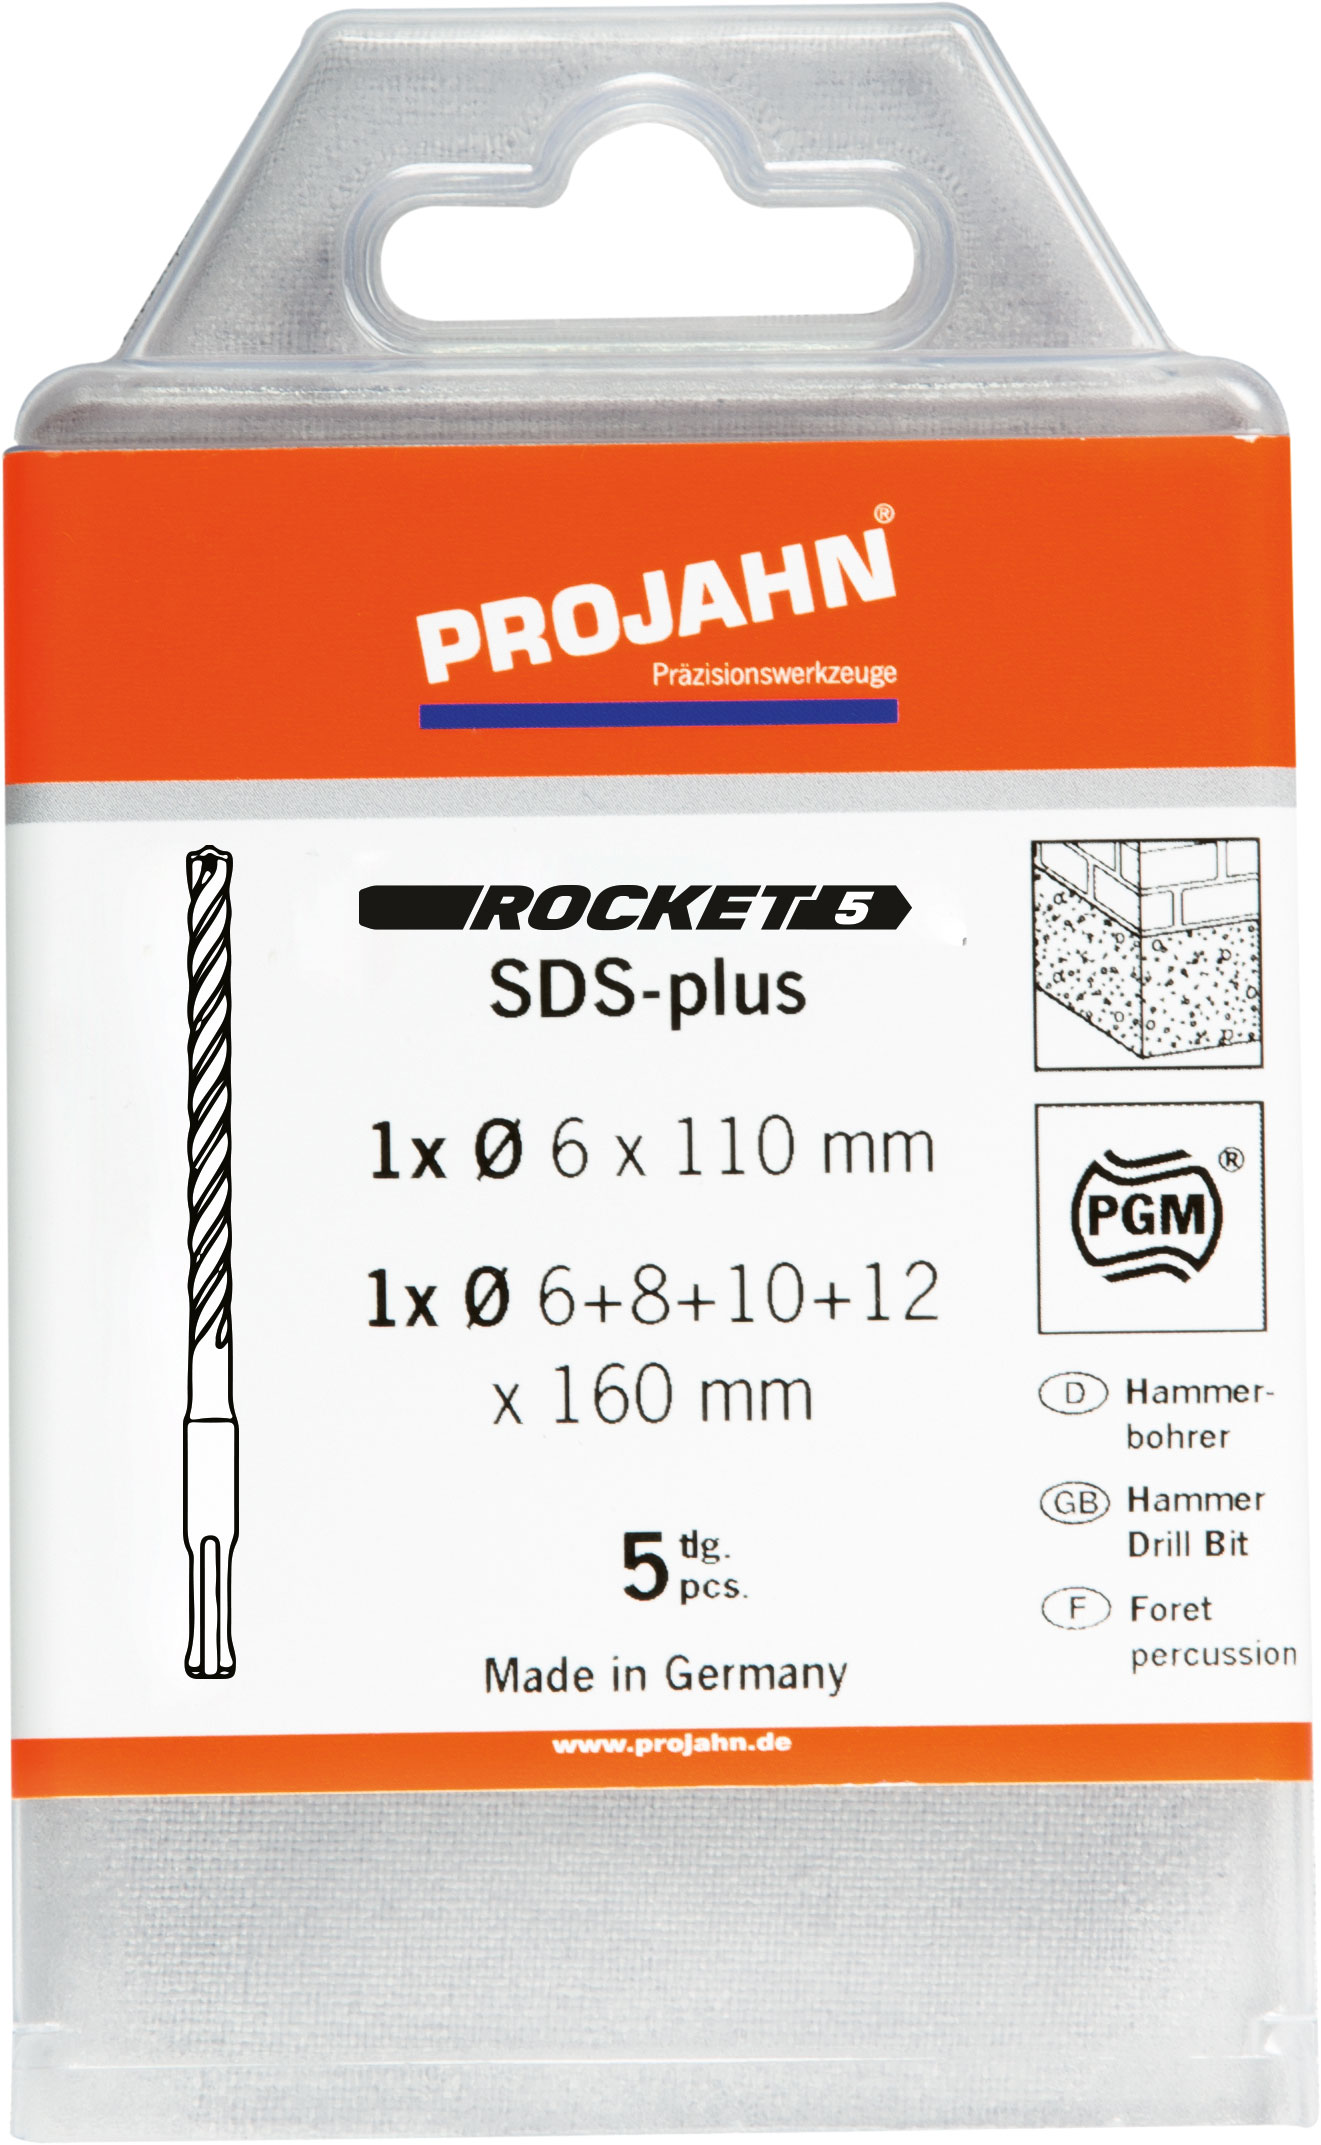 Projahn Hammerbohrer Rocket 5 SDS-plud Set 5 tlg. -Professional / -83046